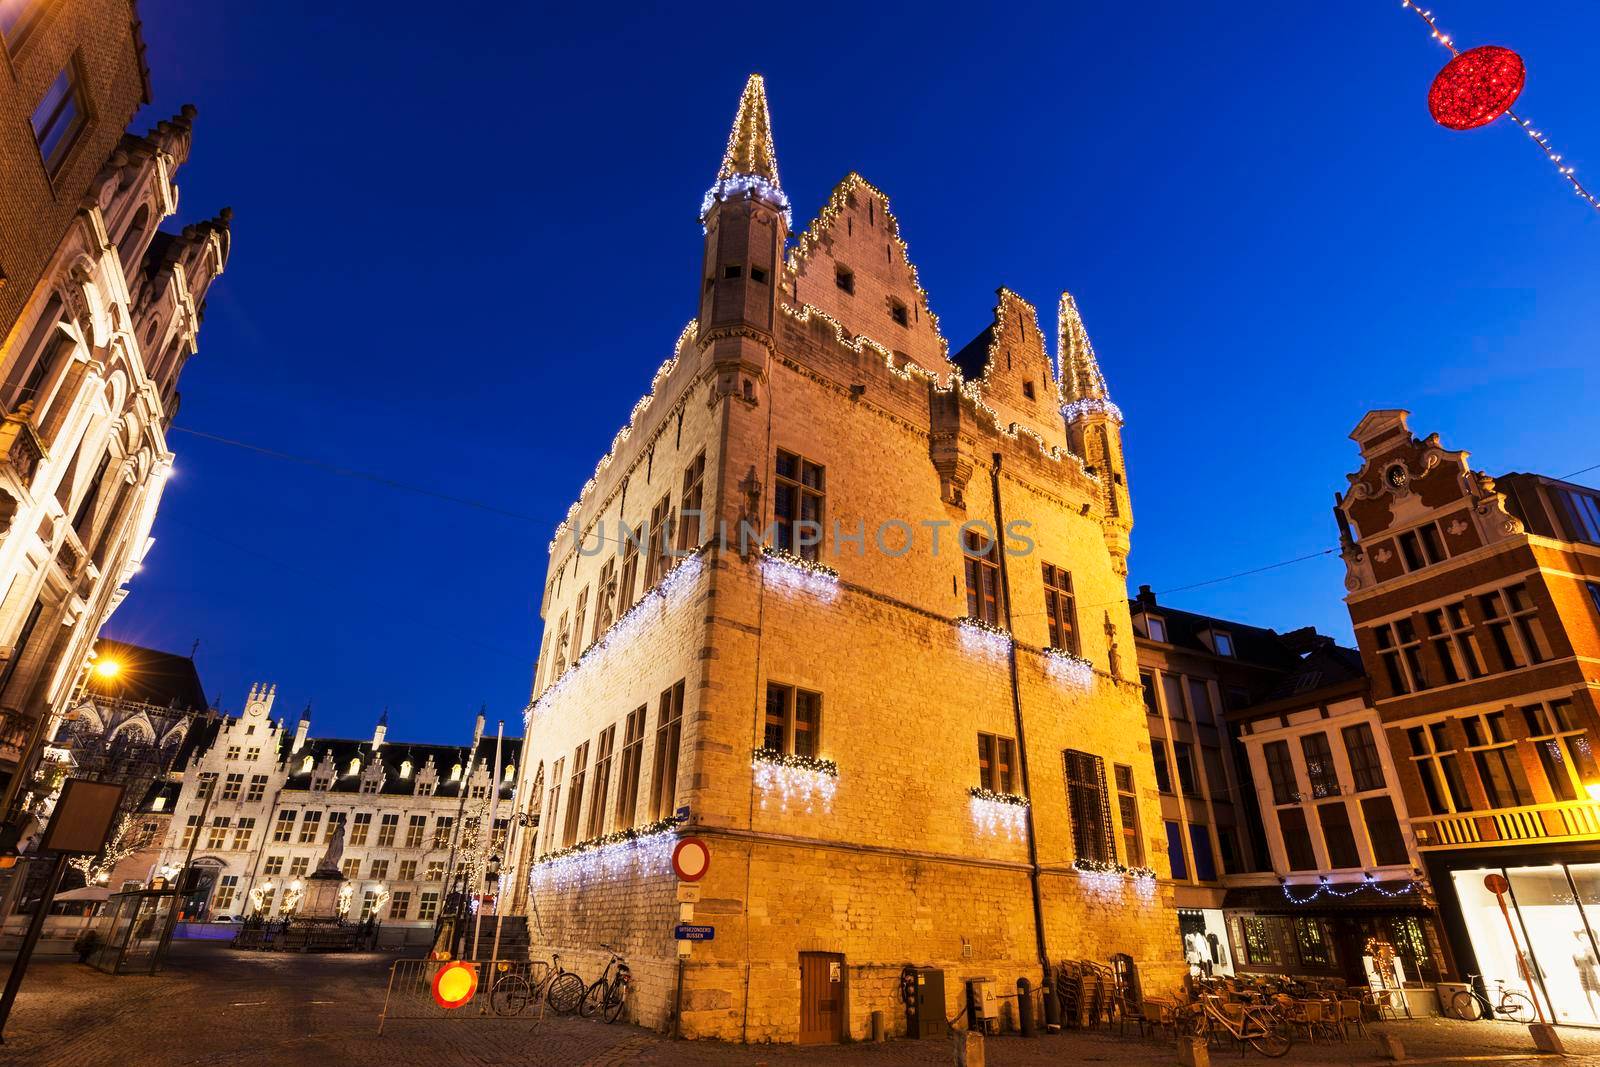 Aldermen's House in Mechelen by benkrut